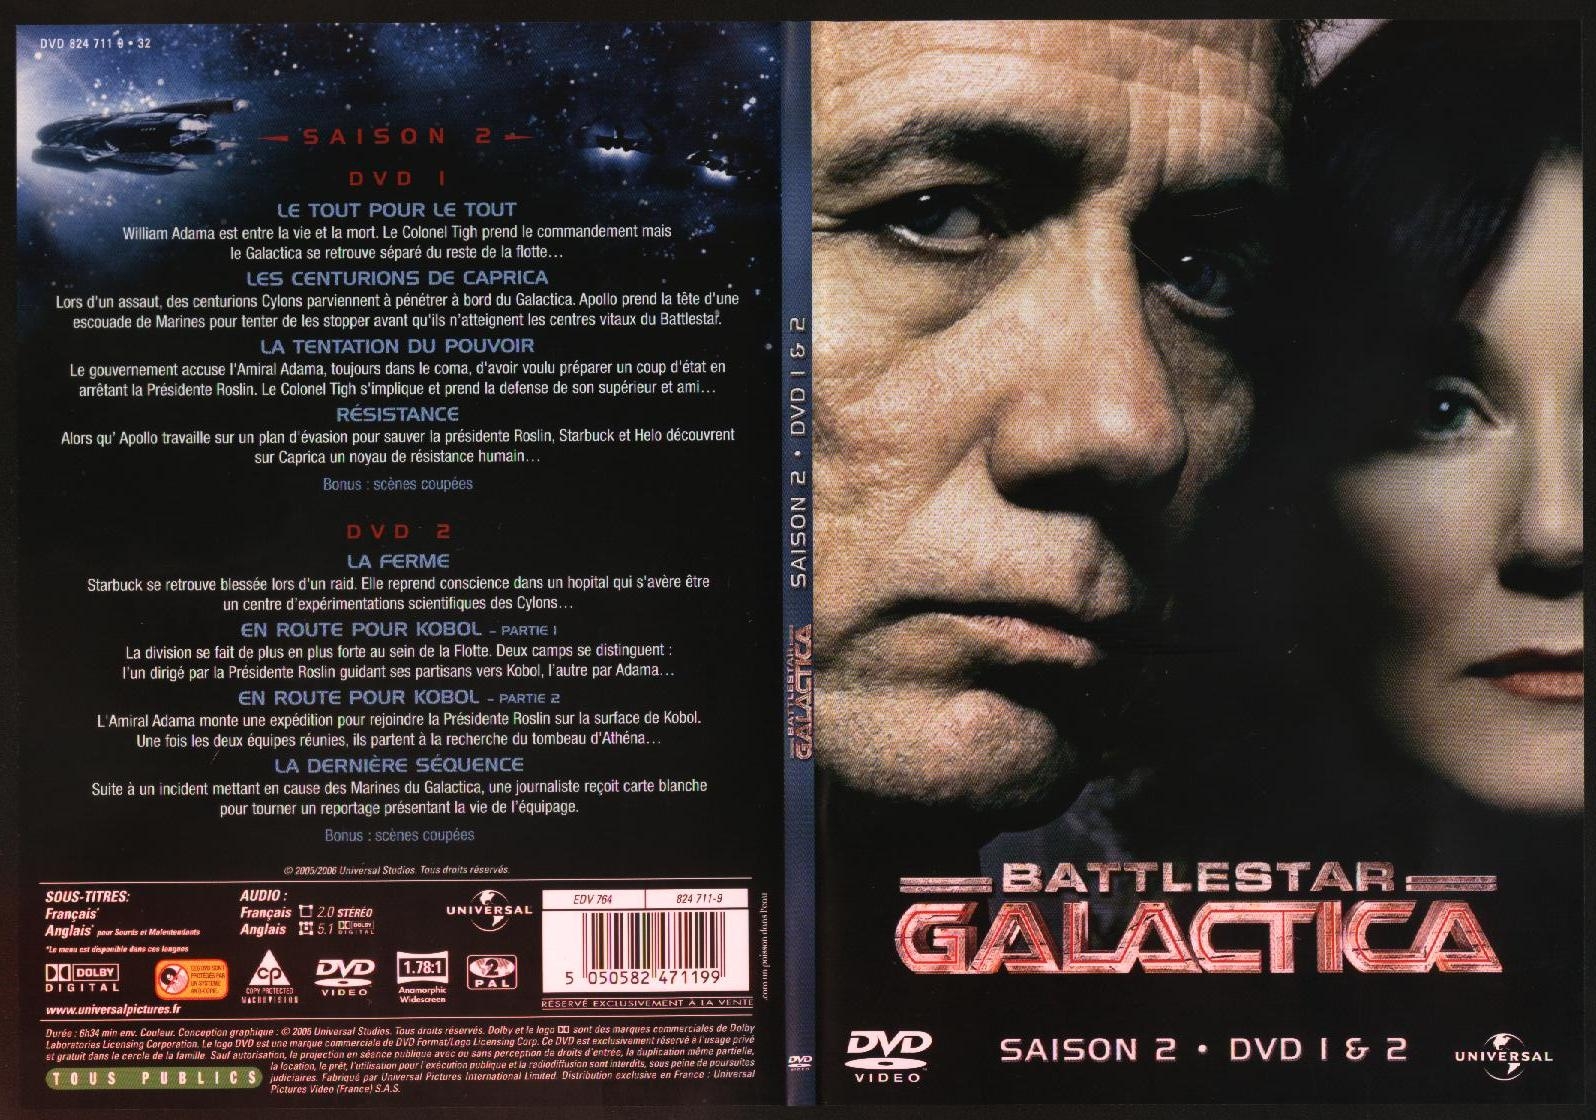 Jaquette DVD Battlestar Galactica saison 2 dvd 1 et 2